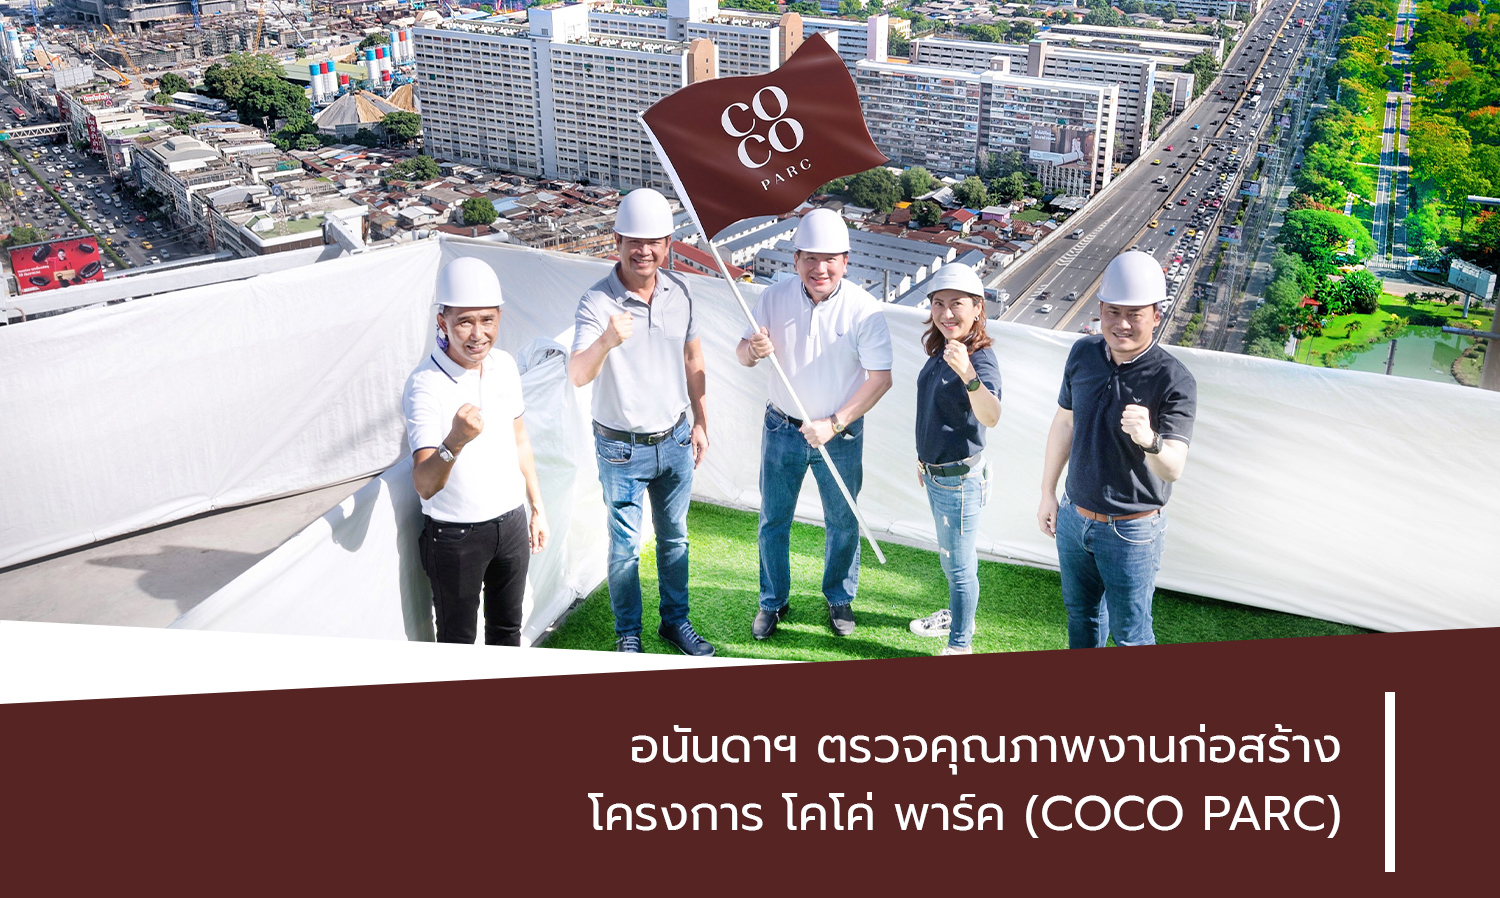 อนันดาฯ ตรวจคุณภาพงานก่อสร้าง โครงการ โคโค่ พาร์ค (COCO PARC)